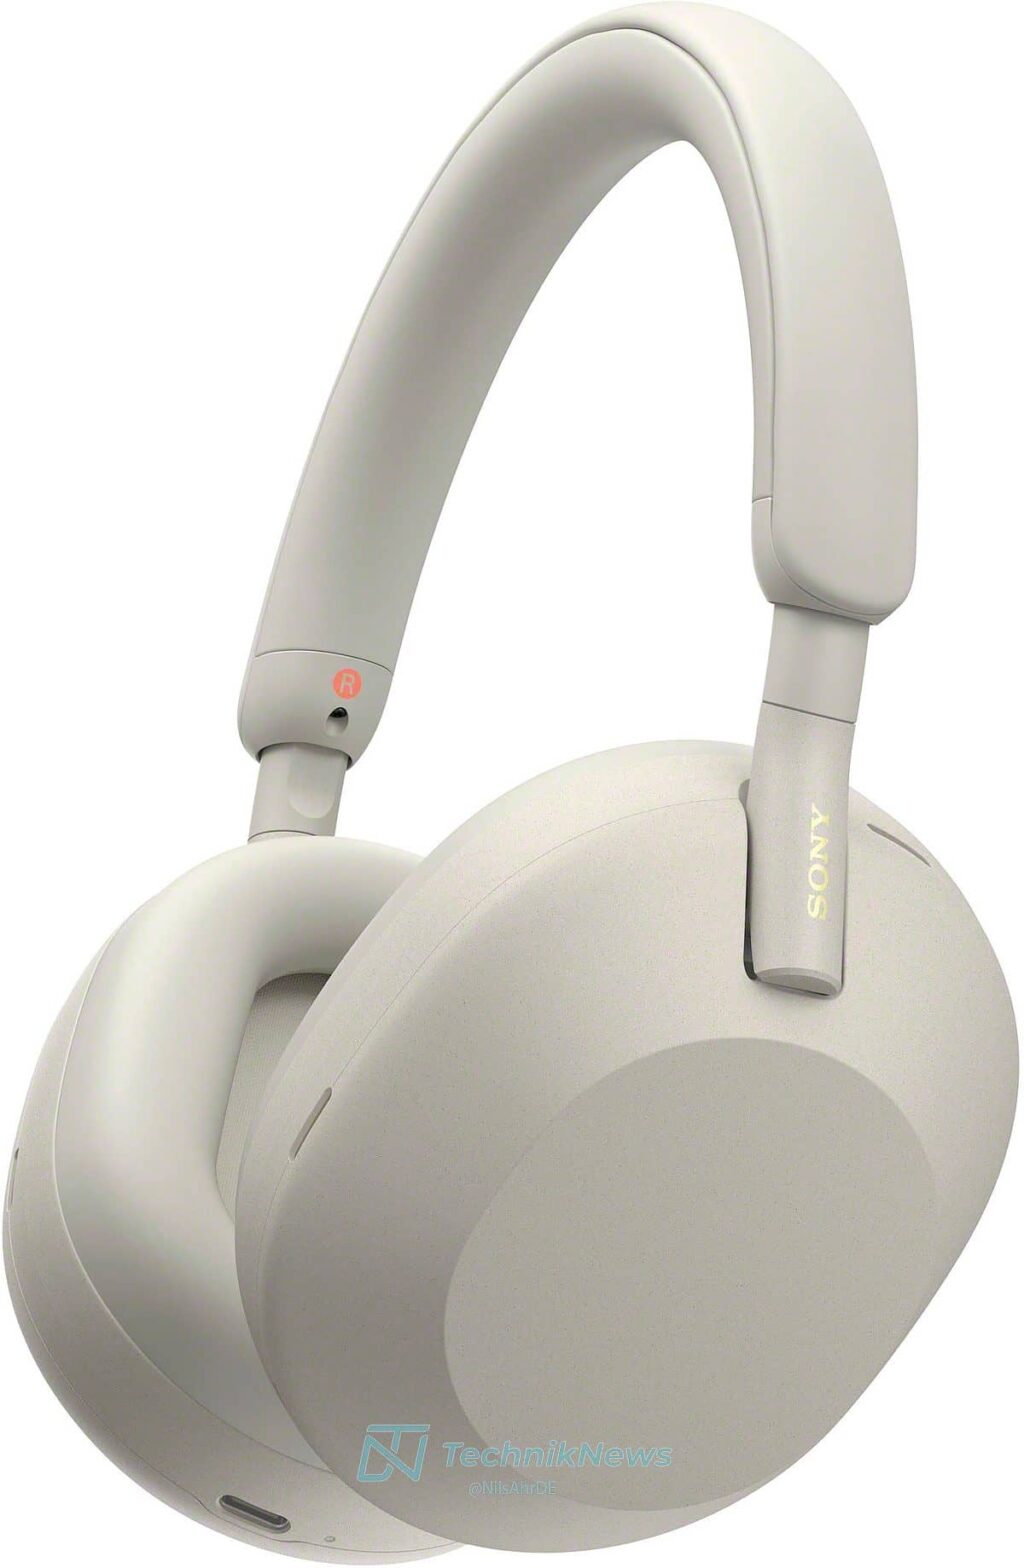 sony xm5 white headphones